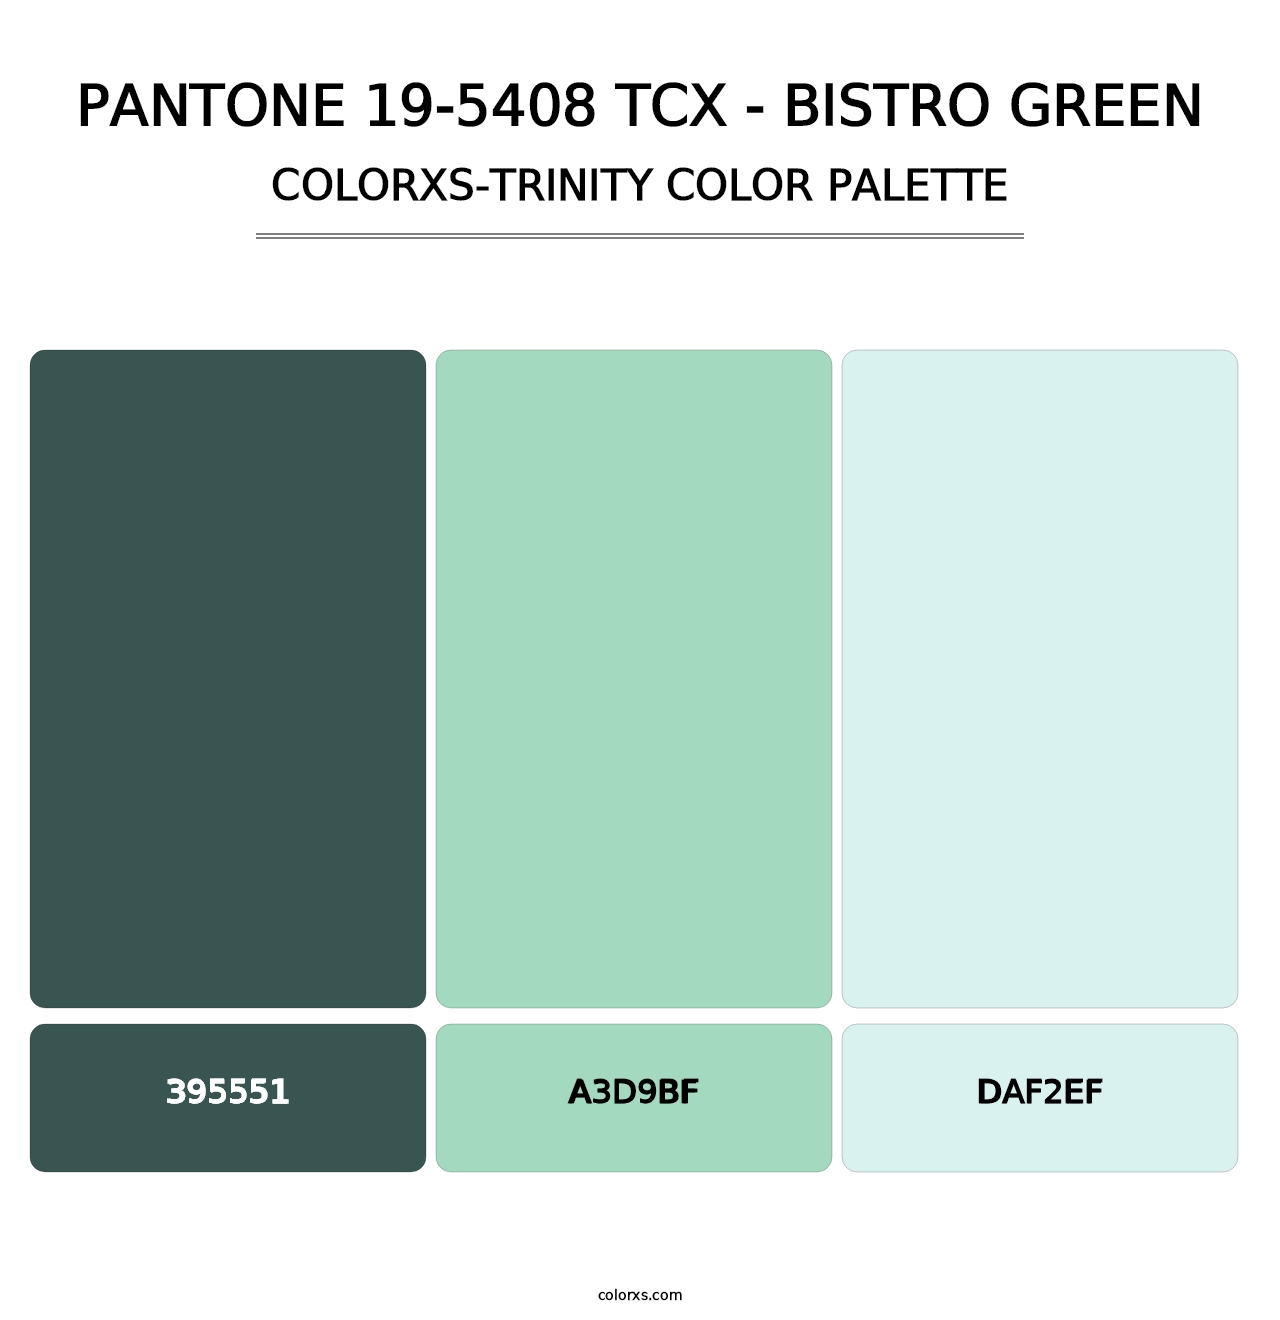 PANTONE 19-5408 TCX - Bistro Green - Colorxs Trinity Palette